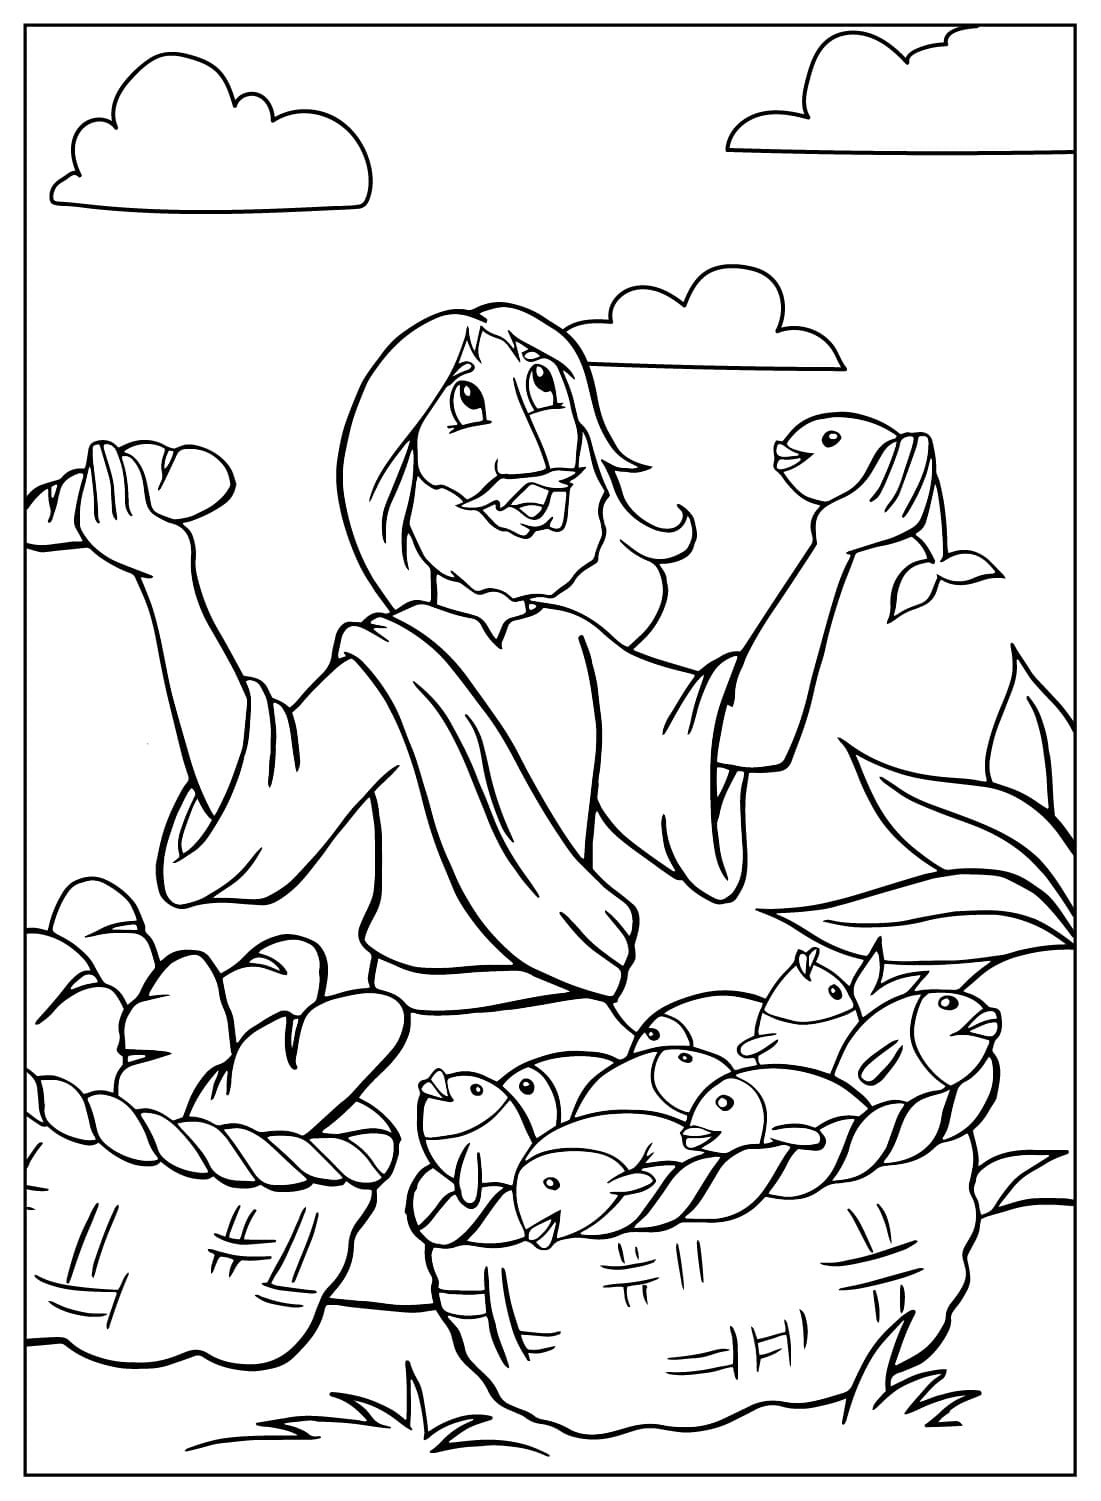 耶稣将面包倍增 耶稣的着色表